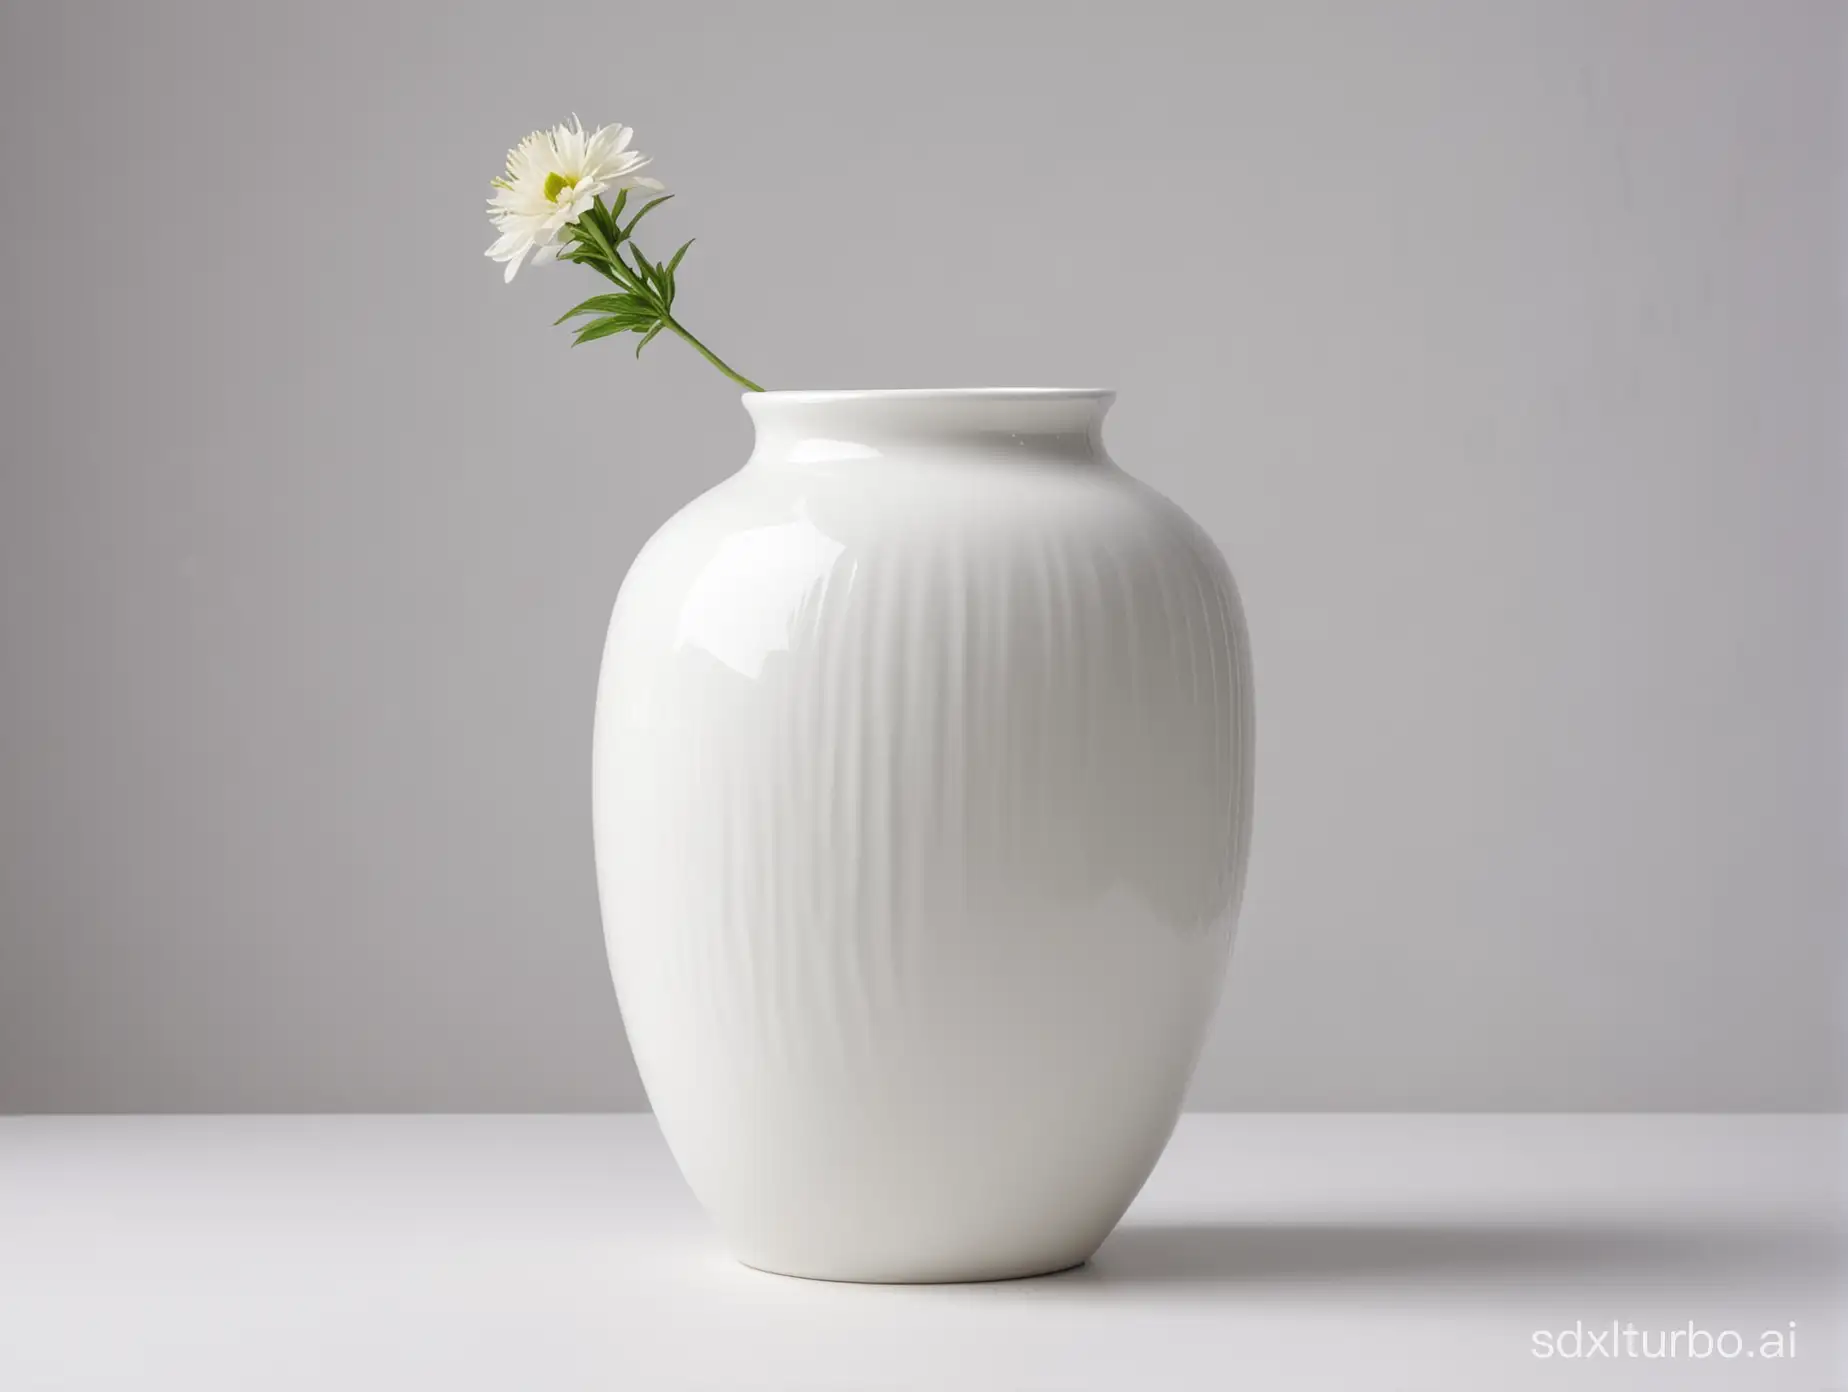 白瓷花瓶、画面背景明亮、正视图